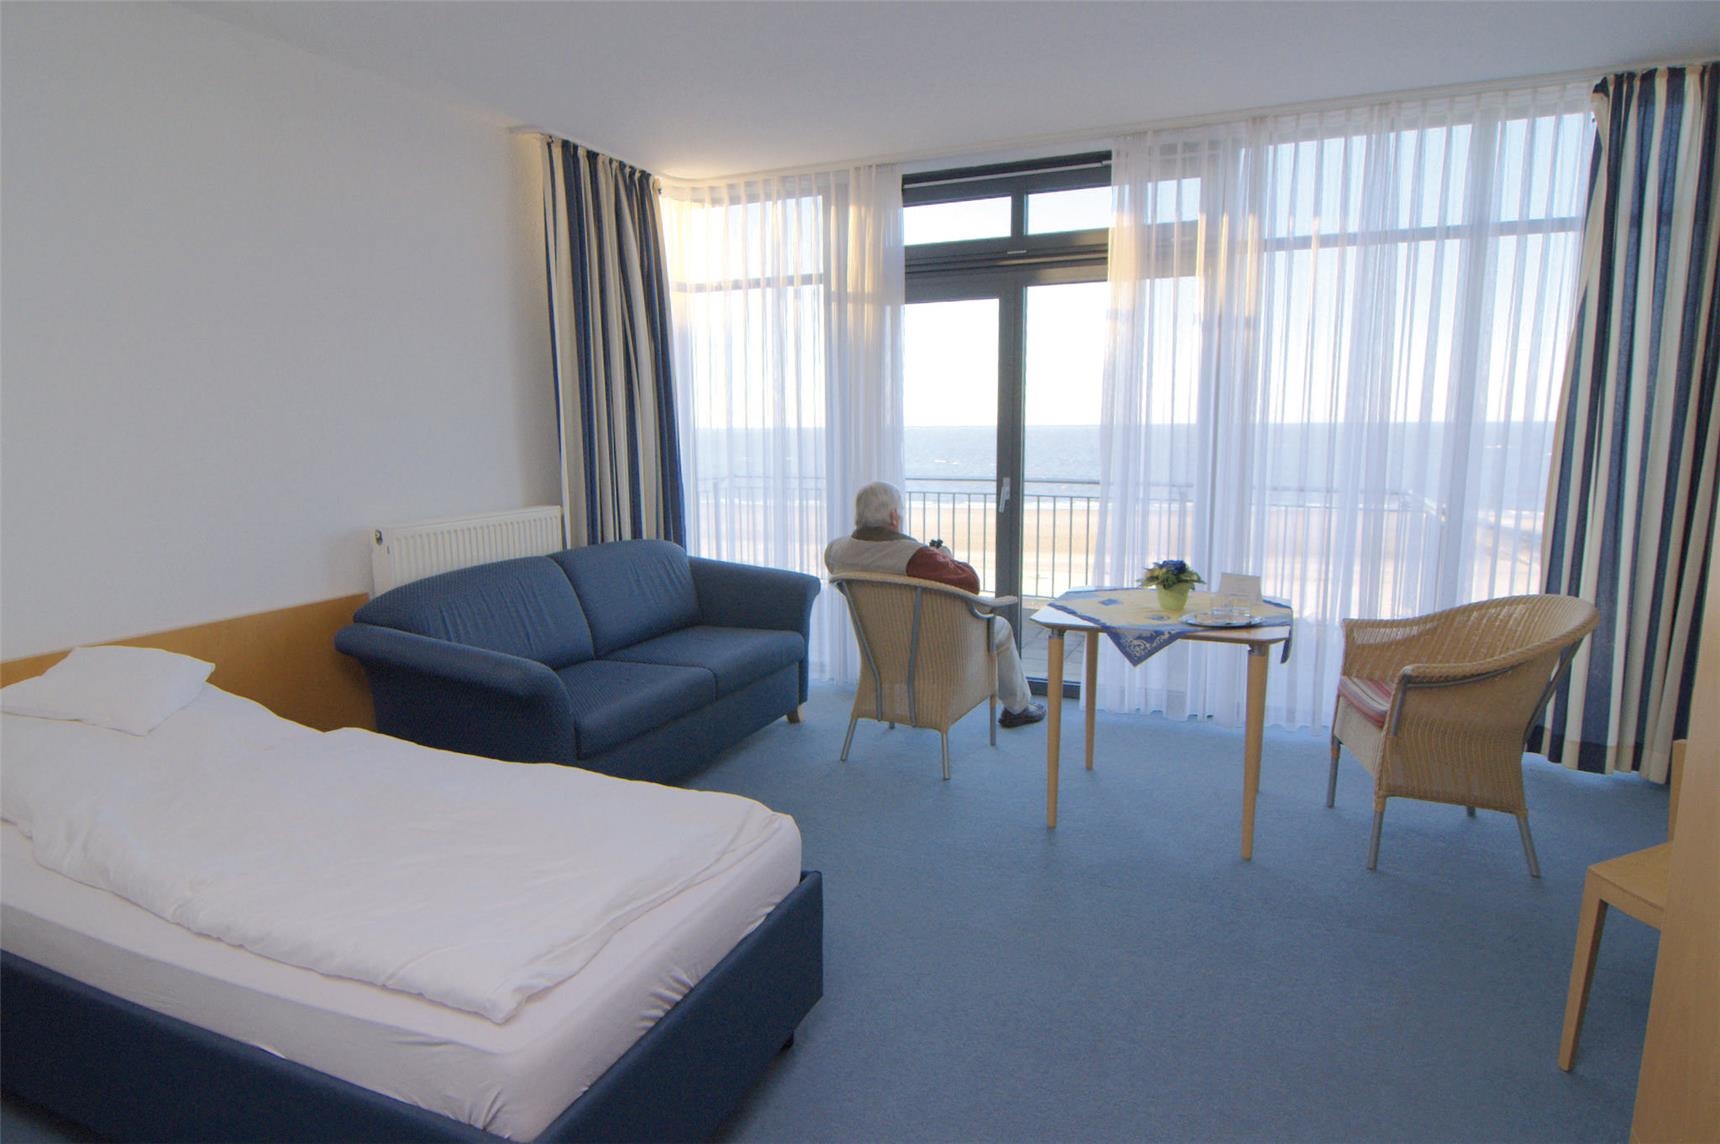 Ein Gästezimmer mit Bett, Sofa, Sitzecke und großem Panoramafenster mit Meerblick. 